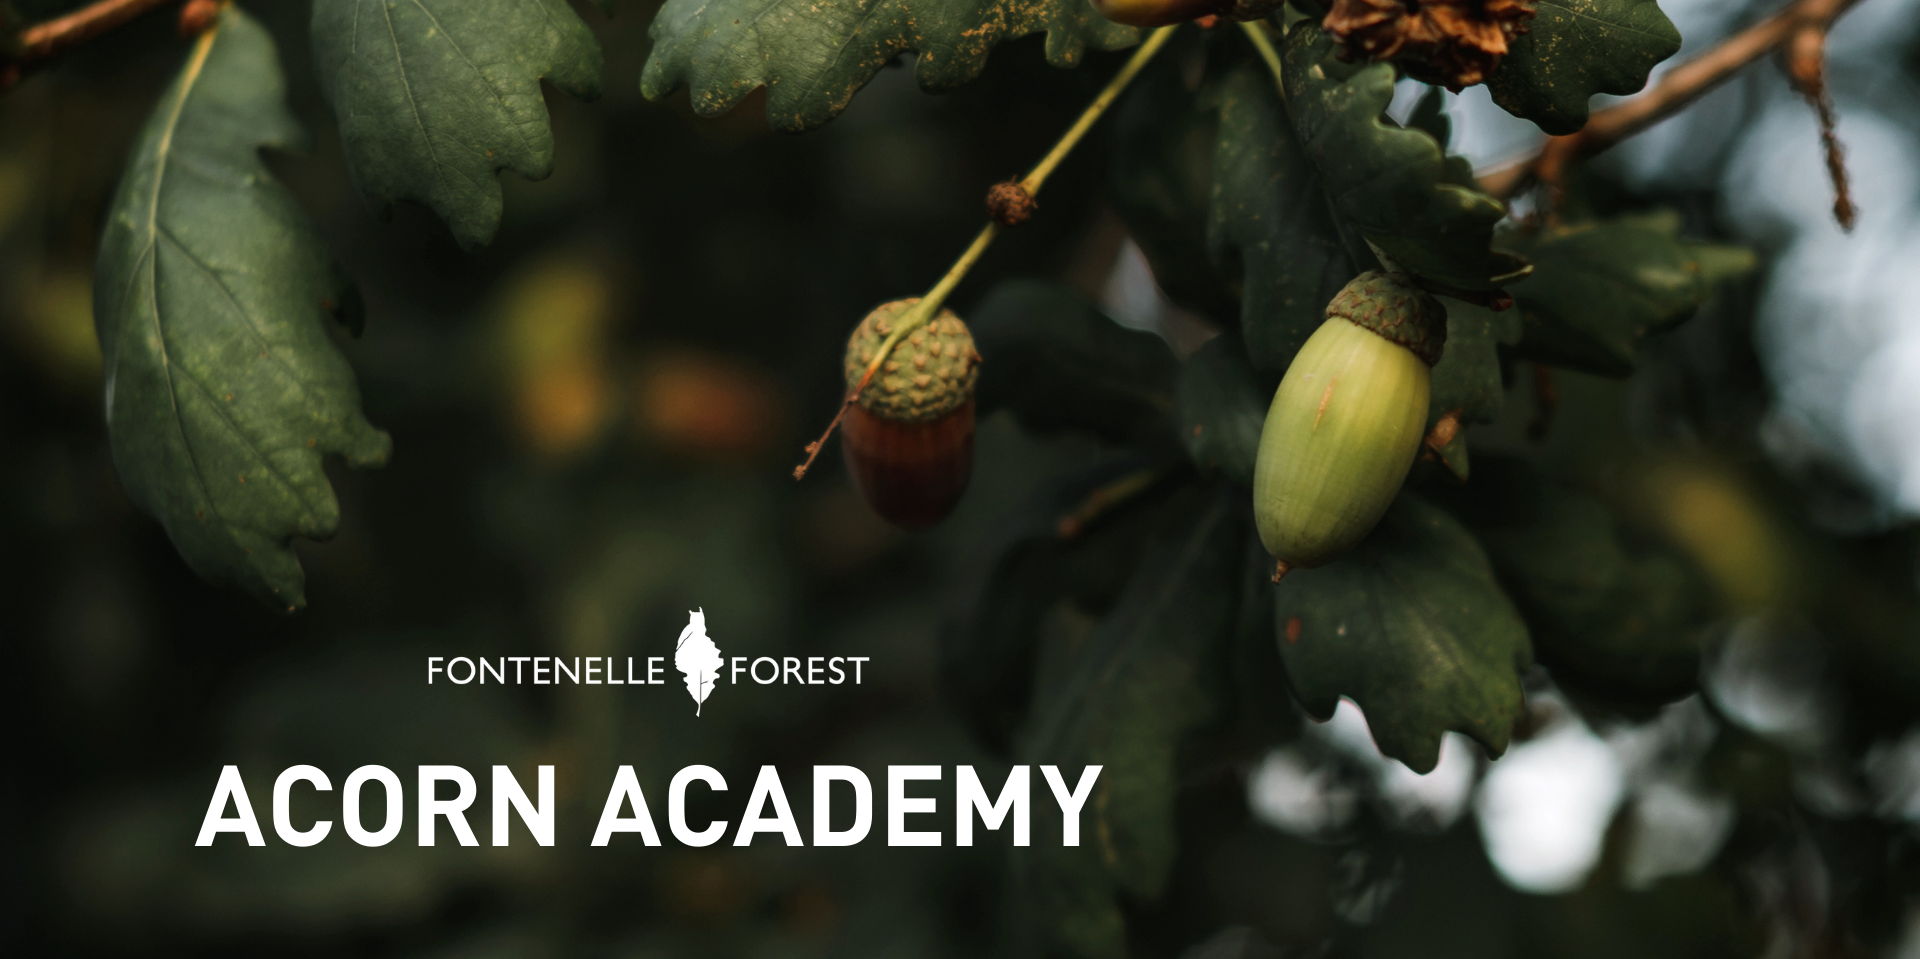 Acorn Academy promotional image